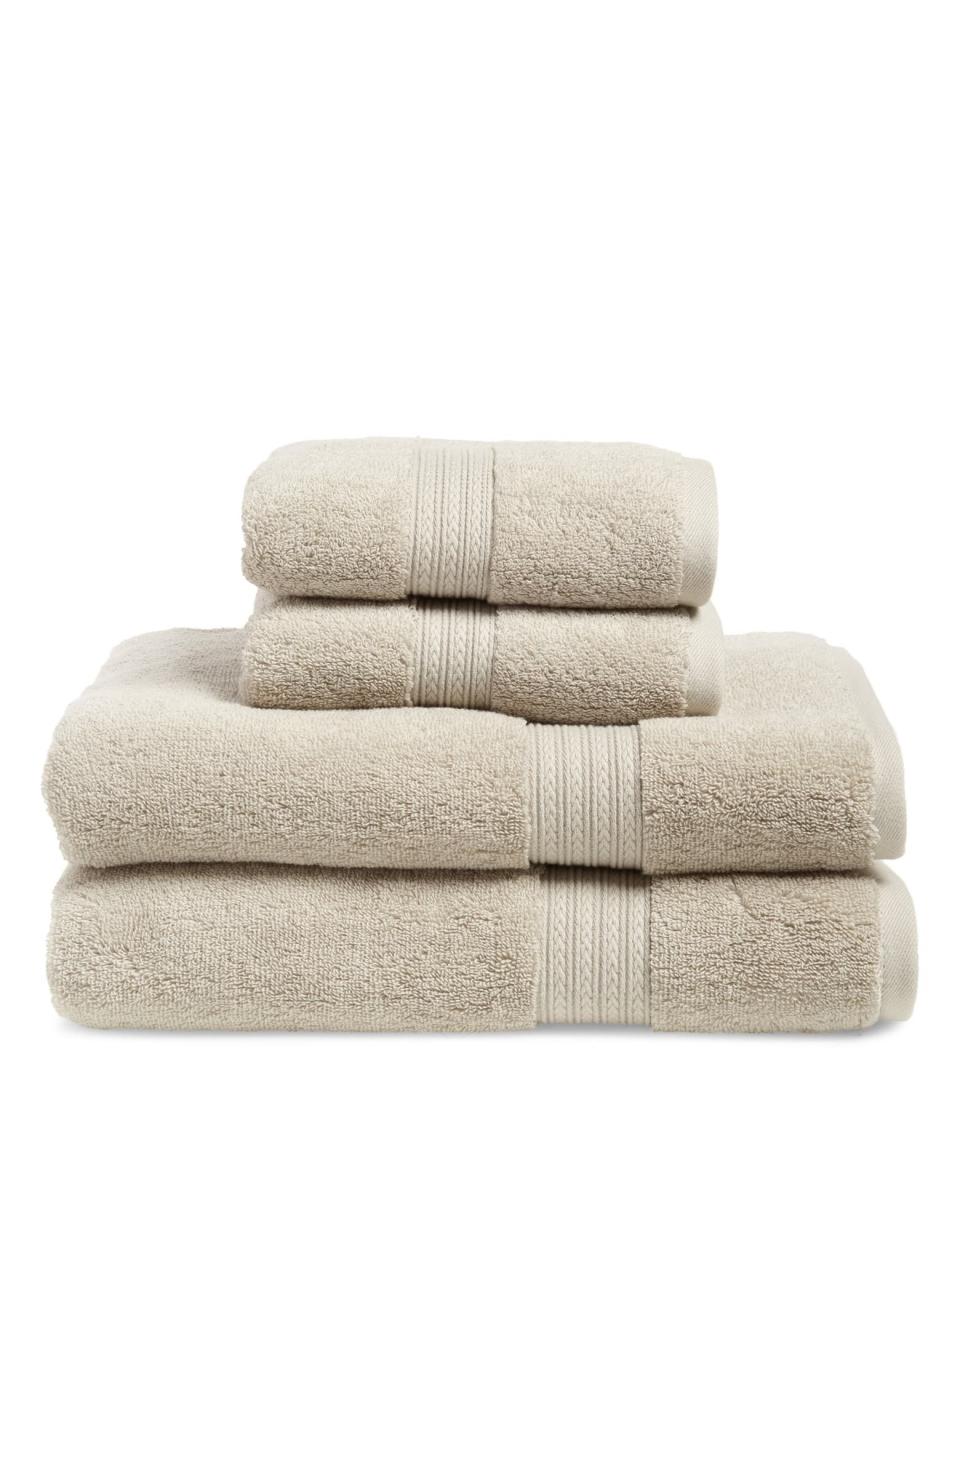 4-Piece Cotton Bath Towel & Hand Towel Set